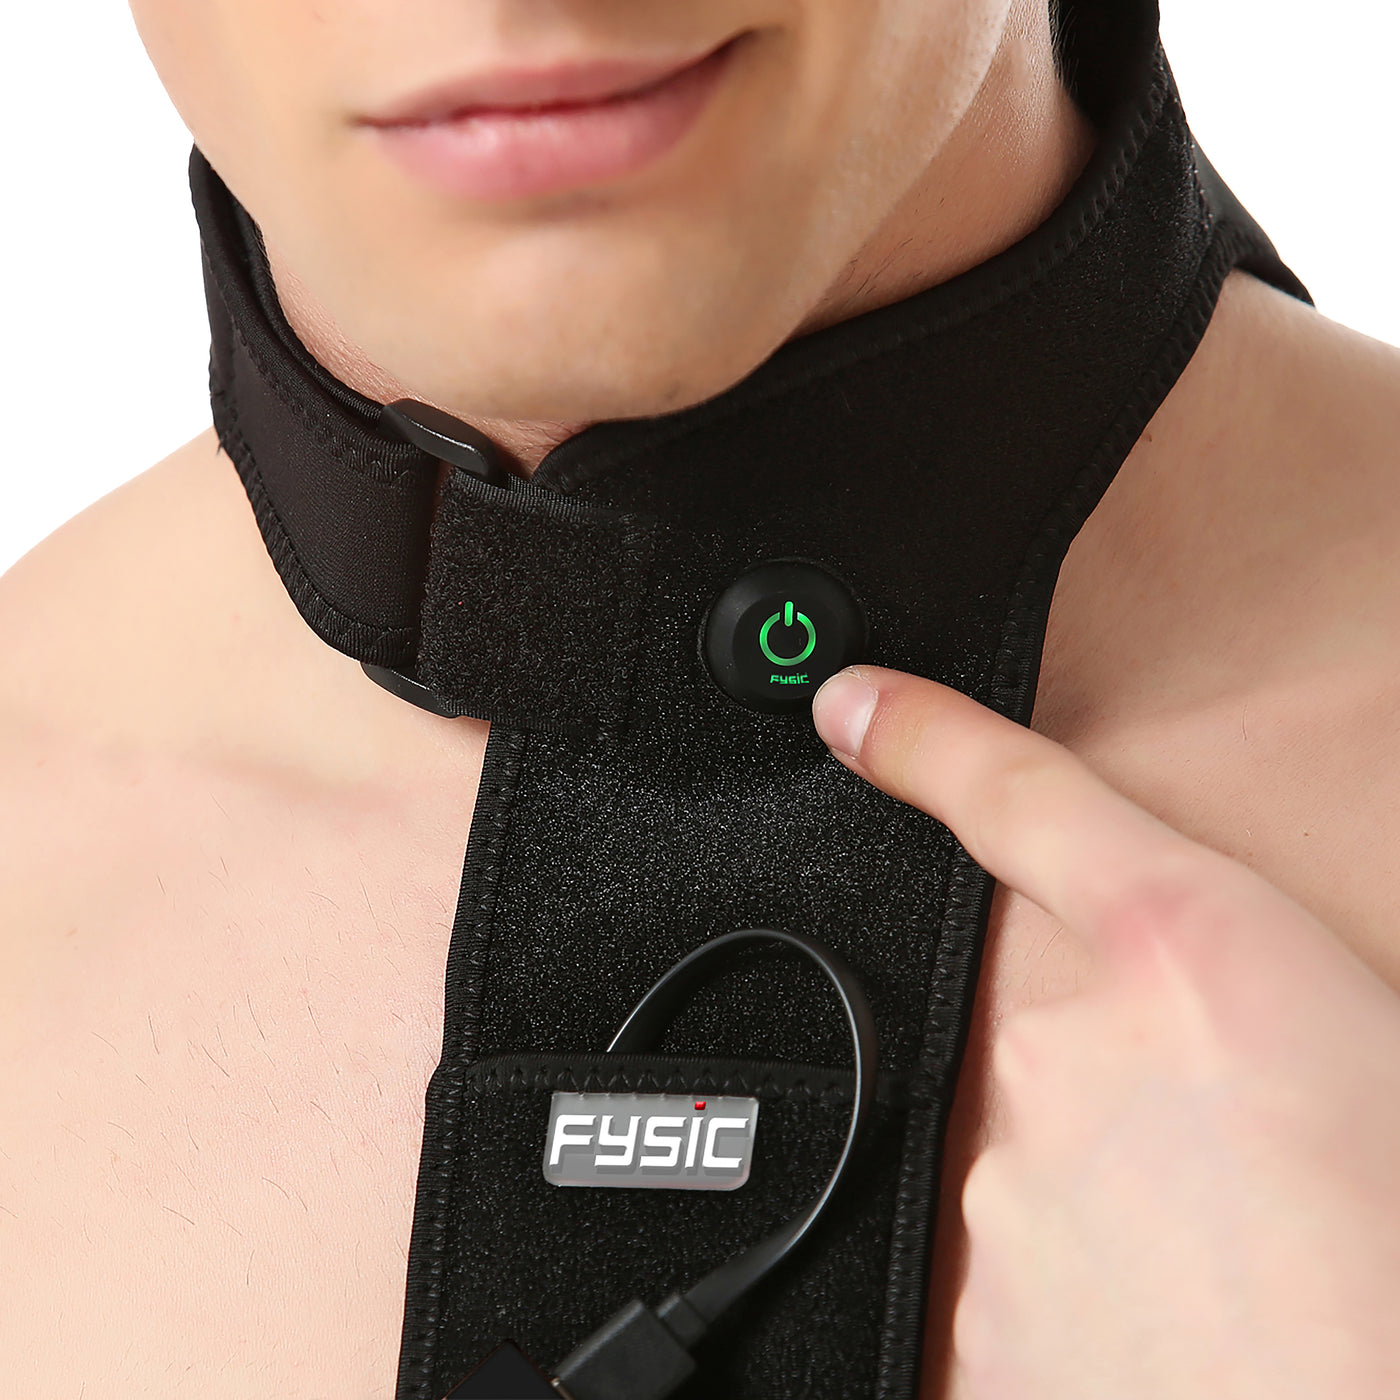 Fysic FHP-160 - Kabellose Wärmebandage für Hals und Nacken